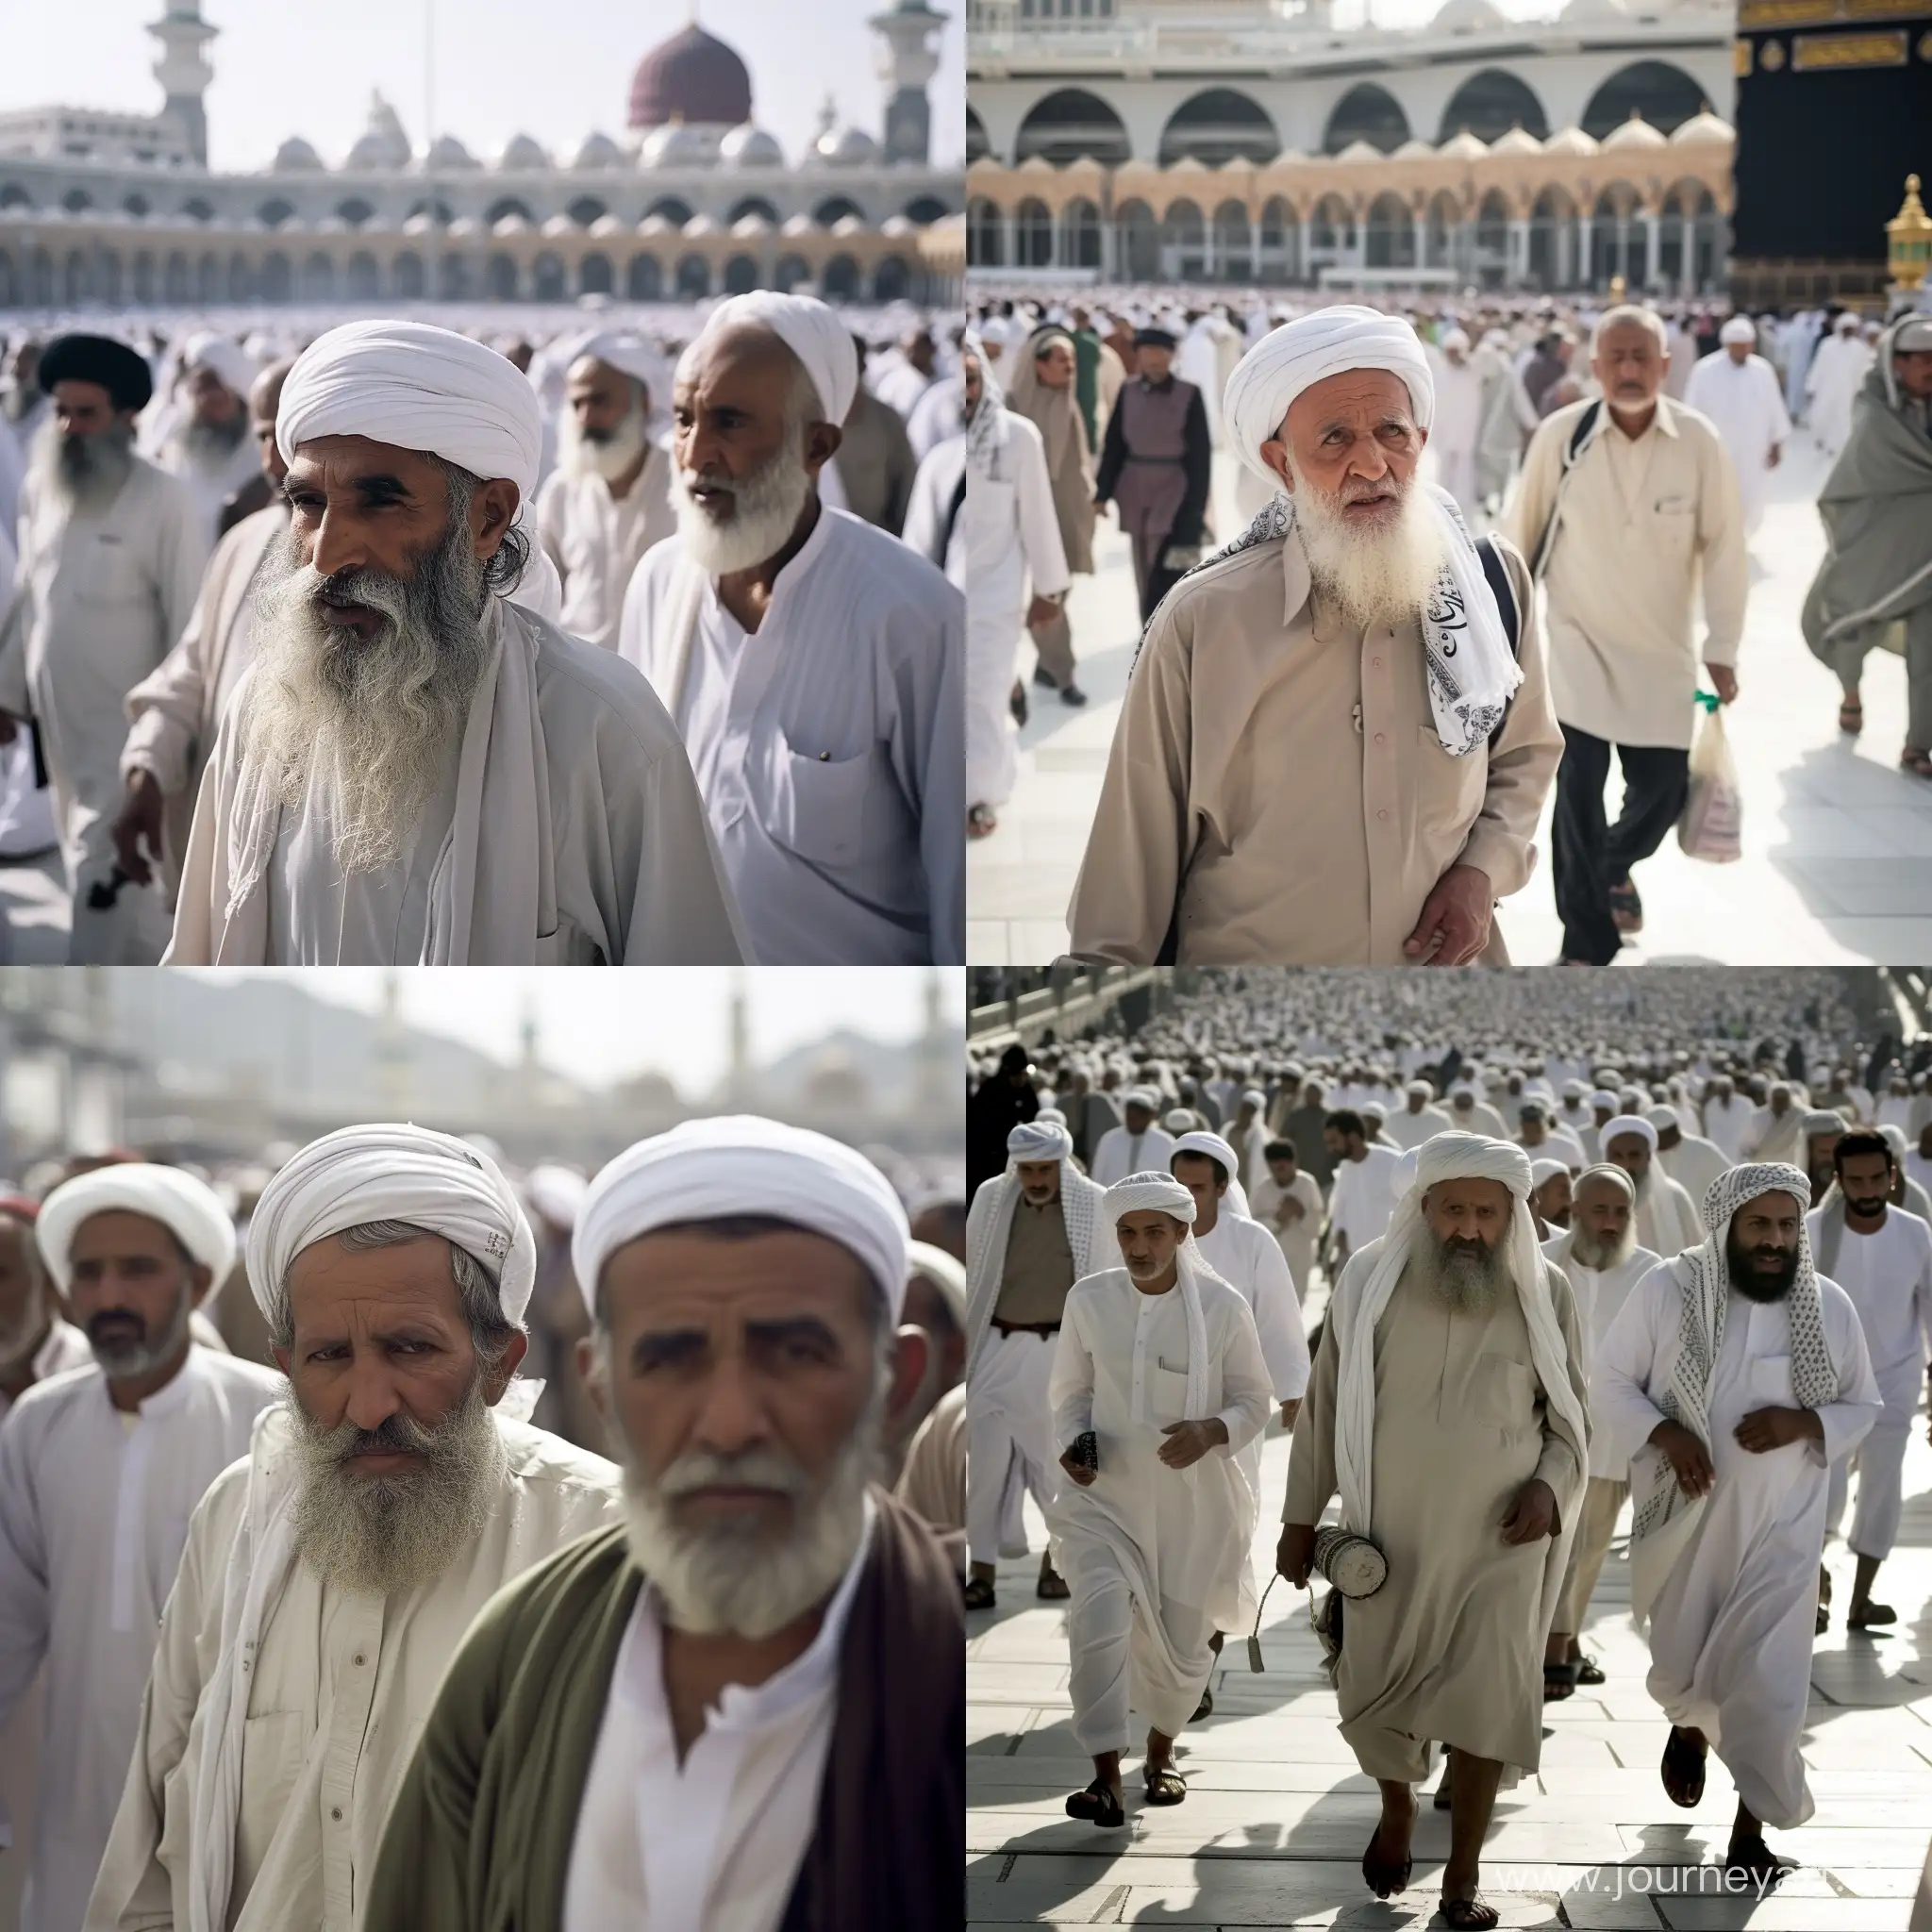 Afghan-Pilgrims-Engaging-in-Spiritual-Rites-at-Mecca